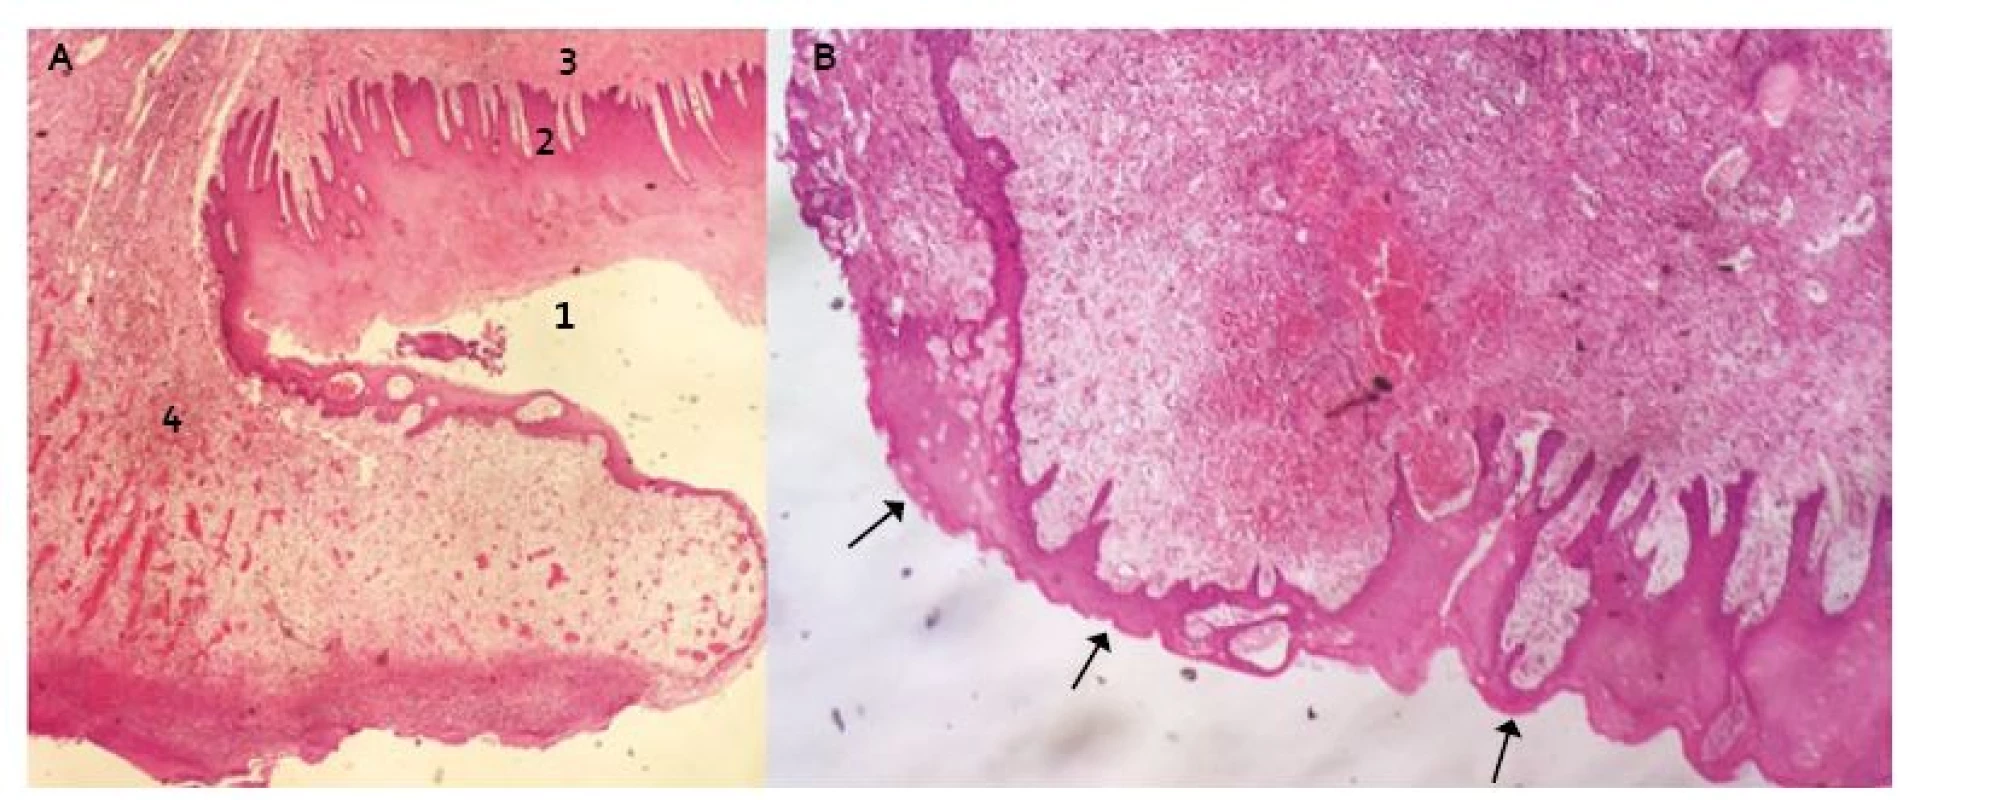 Transverzální řez distálního jícnu v místě resekční plochy s protekcí Xe-Dermou&lt;sup&gt;®&lt;/sup&gt; (Hematoxilin-Eosin): A. 1. vrstevnatý dlaždicový epitel nerohovějící – povrchová vrstva s jádry, 2. epitel vrstevnatý dlaždicový nerohovějící – vrstva bazální, 3. tunica submucosa, 4. fibrinózně hnisavý exsudát s granulační tkání (součást hojení). B. Šipky ukazují re-epitelizaci přes submukózu.
Fig. 2. Transversal incision of distal oesophagus at the resection site with Xe-Derma cover&lt;sup&gt;®&lt;/sup&gt; (Haematoxylin-Eosin): A. 1. non-keratinized stratifi ed squamous epithelium – the superficial layer, 2. non-keratinized stratified squamous epithelium – the basal layer, 3. tunica submucosa, 4. fi brinous-purulent exudate with granulation tissue (as a healing component). B. The arrows show the re-epithelialization over submucosa.